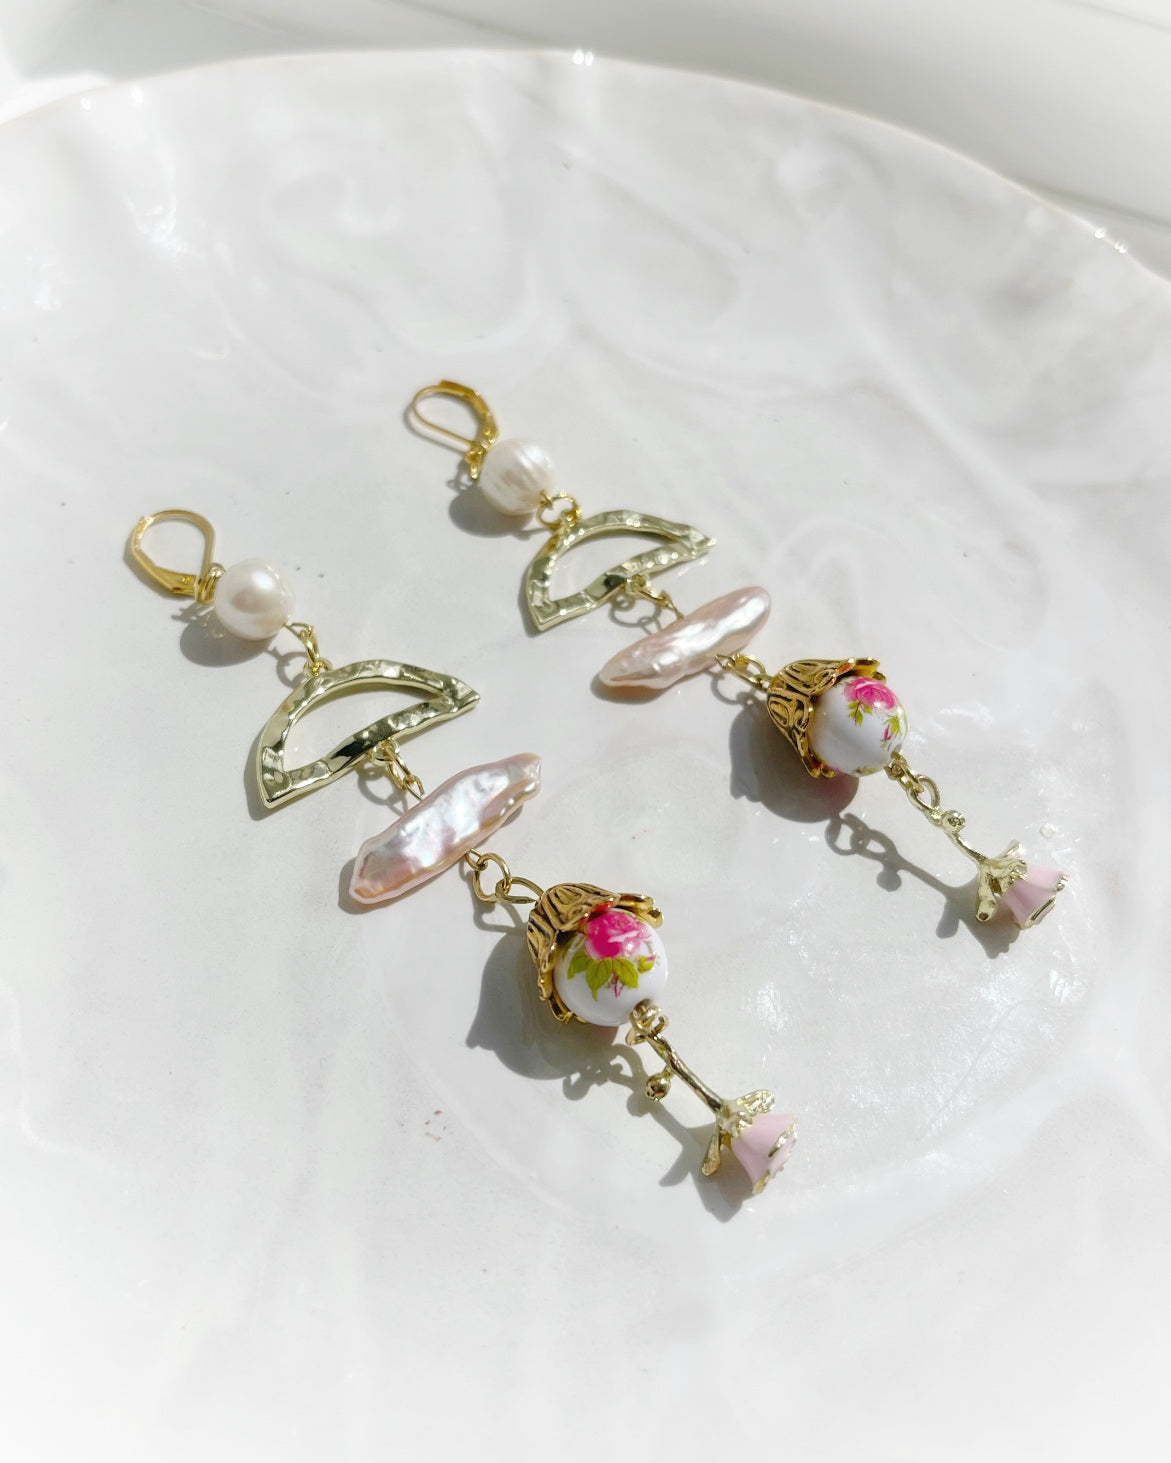 Pearl drop earrings with rose flower charm, white freshwater pearl dangle earrings, statement earrings, summer earrings